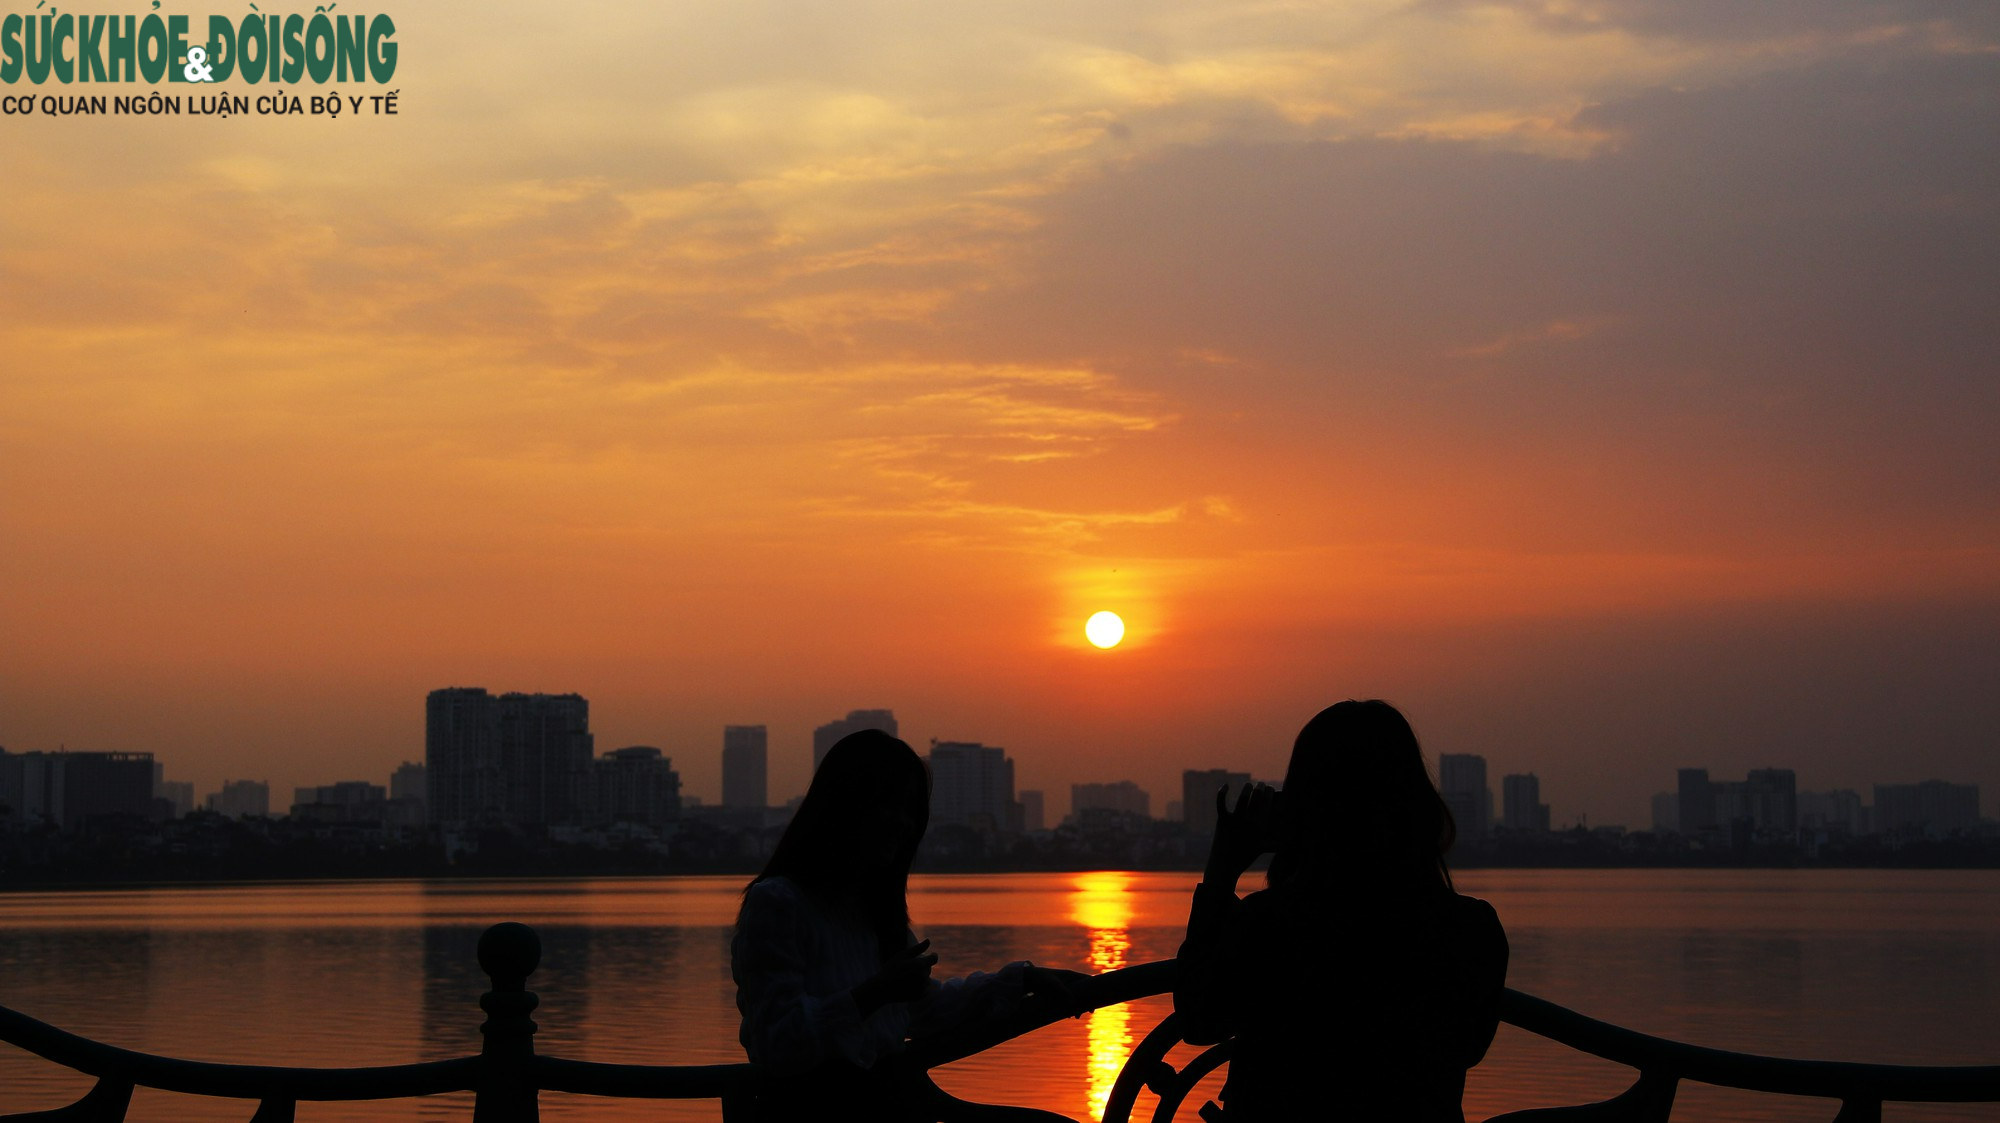 Hồ Tây hoàng hôn được biết đến là khu vực yên tĩnh và an nhiên nhất của Hà Nội. Bạn sẽ được trải nghiệm một khoảng thời gian tuyệt đẹp khi chiếc mặt trời lớn dần kết hợp với ánh nến trên các tàu thuyền nhỏ của dân cư địa phương.